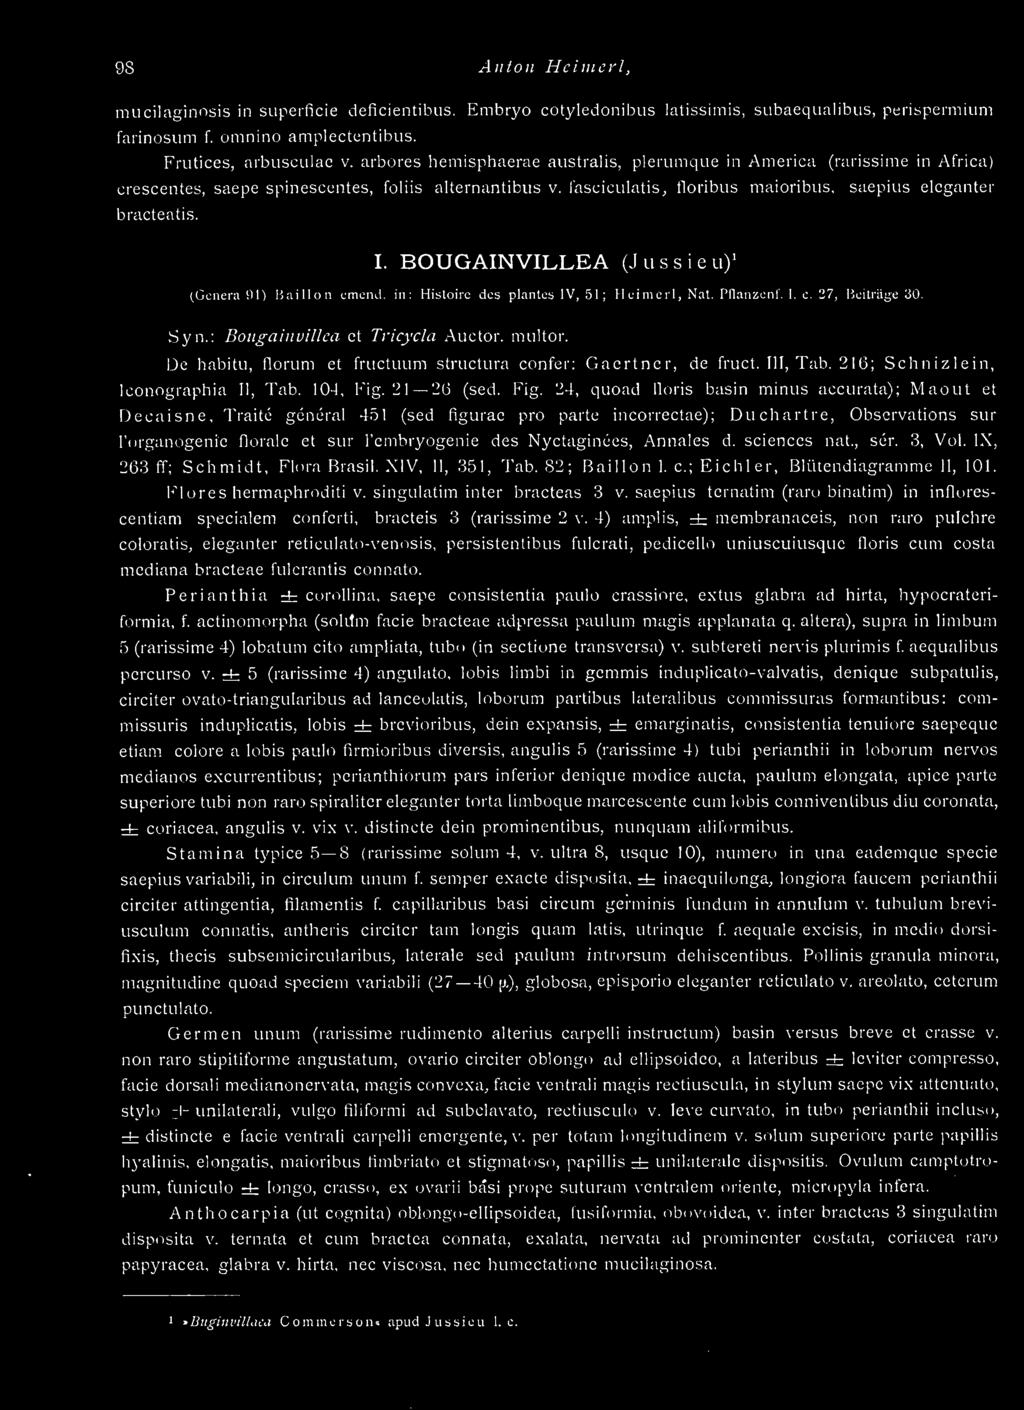 BOUGAINVILLEA (Jussieu)' (Genera ill) Buillon emend. in: Histoire des plantes IV, 51; Ileinicrl, Nat. Pllanücnr. I. c. '37, Bcitiäye 30. Syn.: Boitgainvillca et Tricycla Auetor. multor.